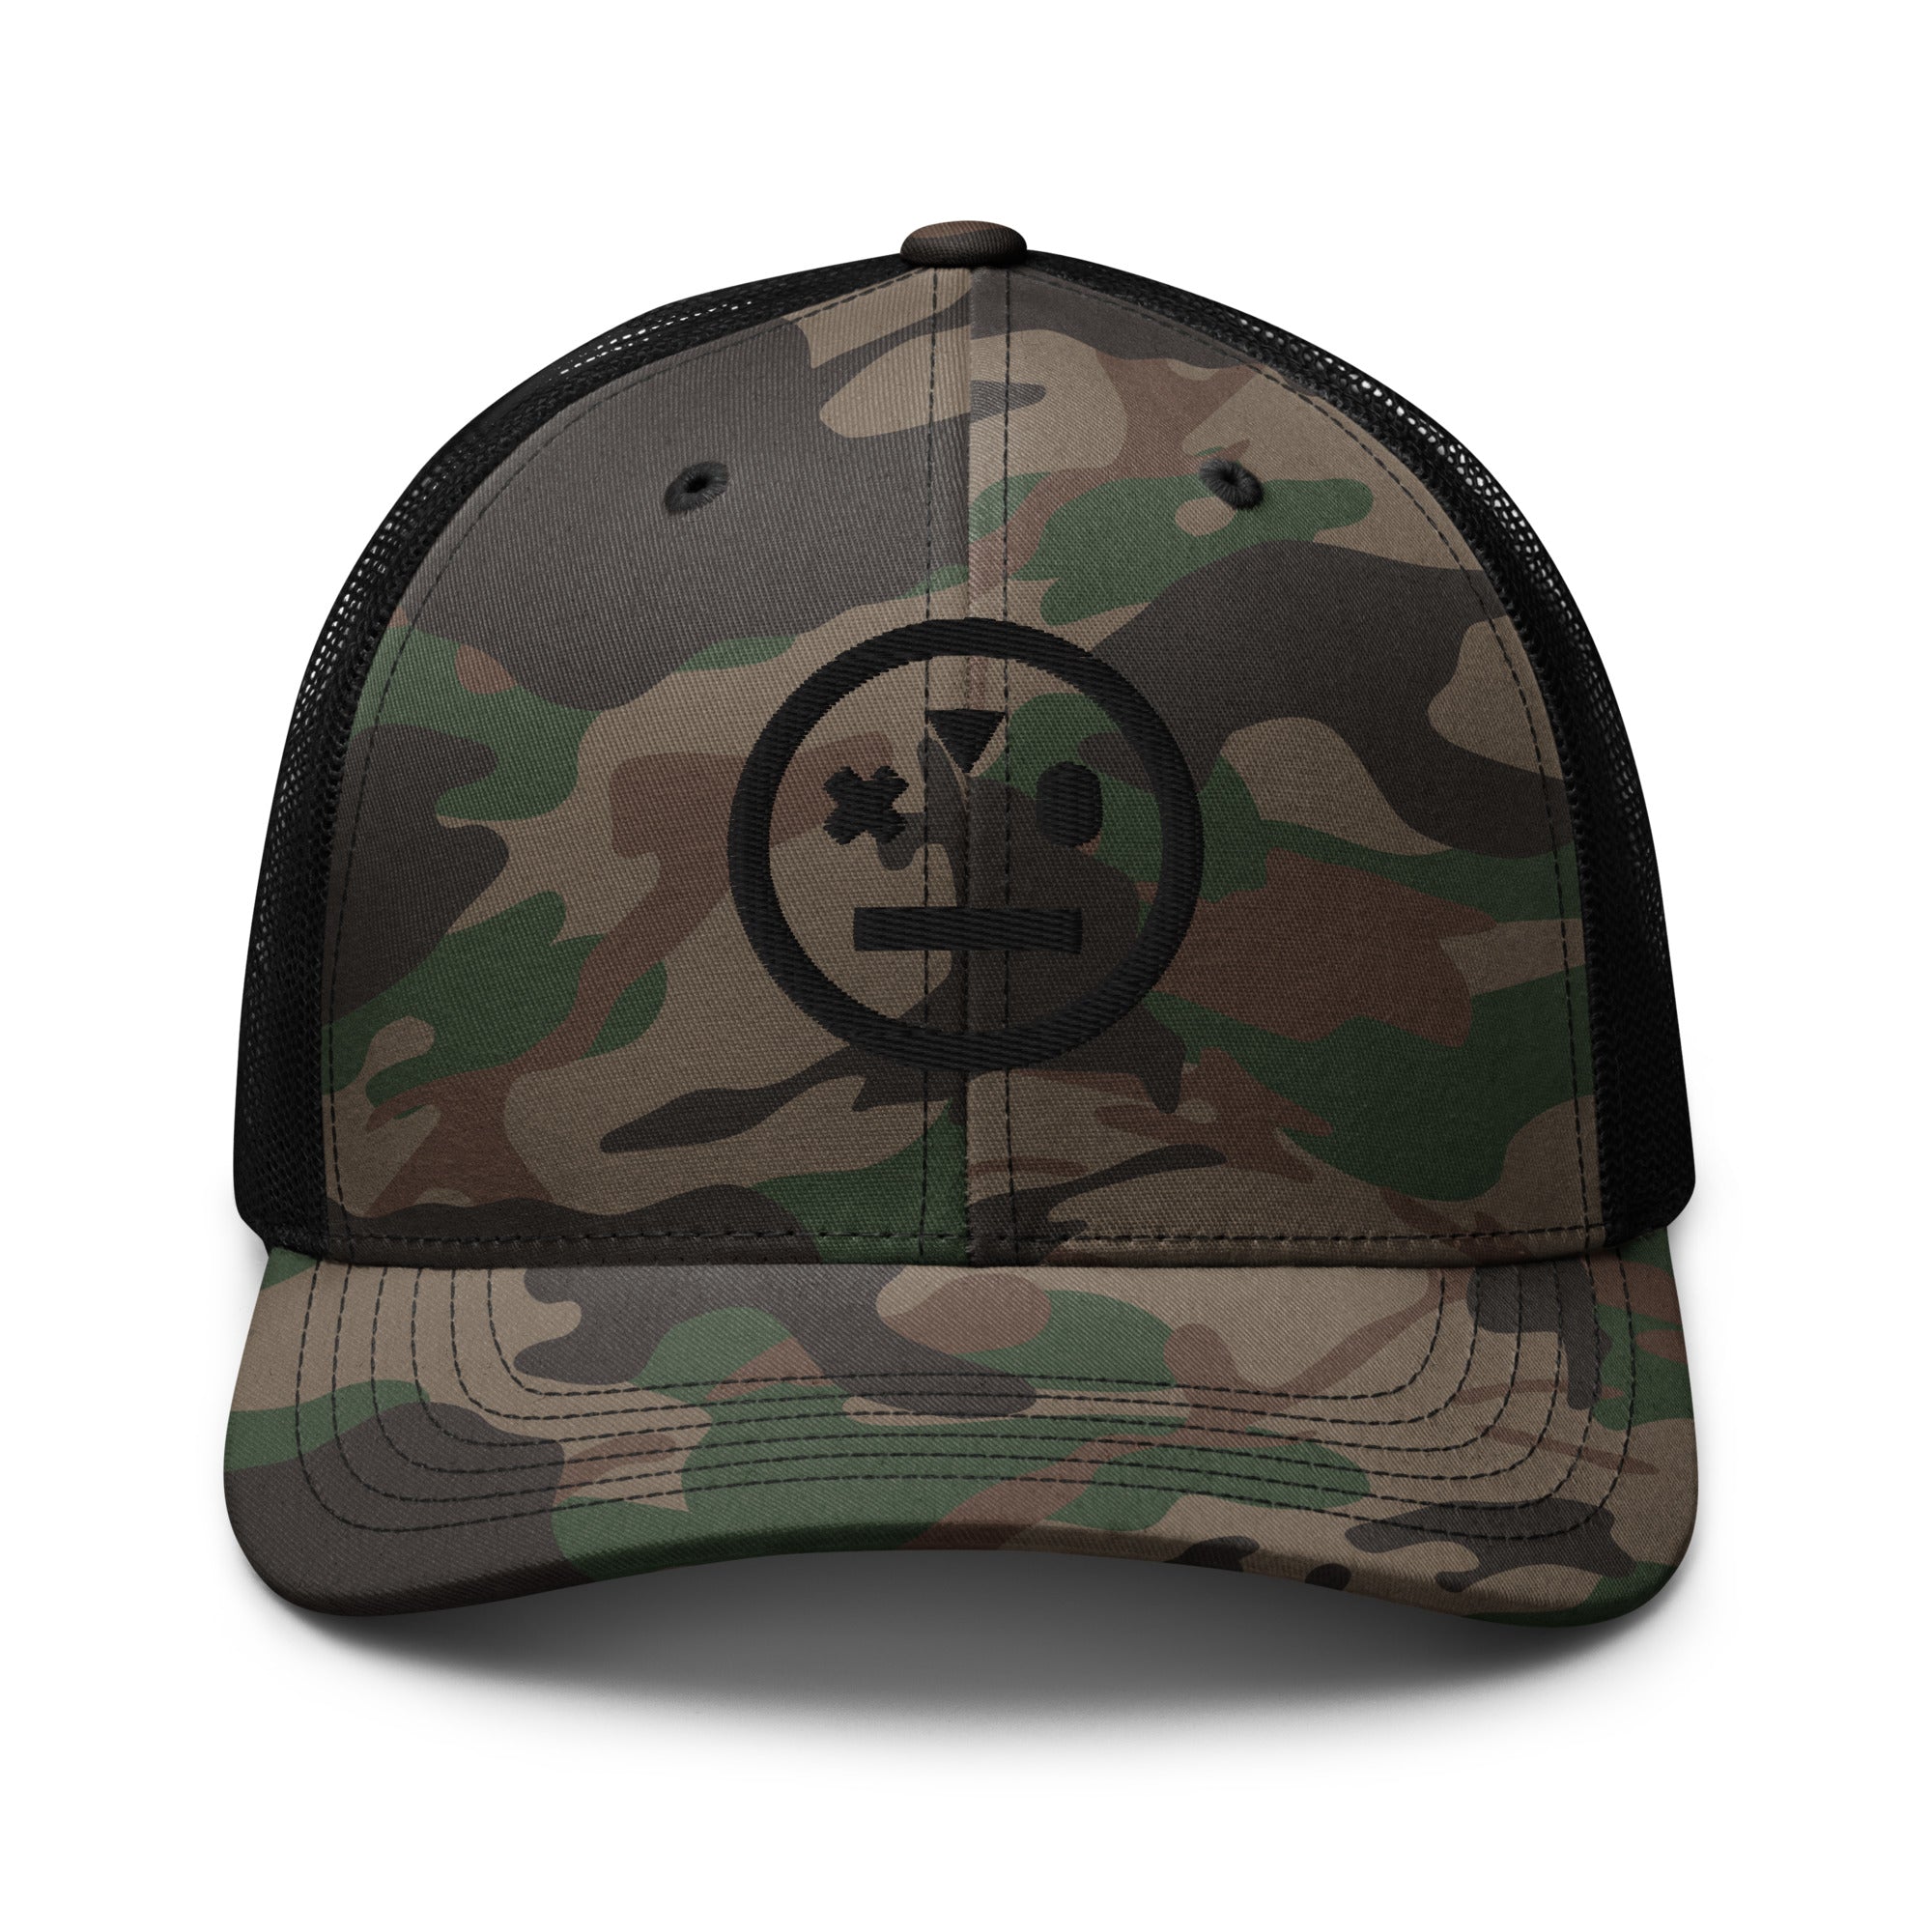 https://www.stonedape.xyz/cdn/shop/files/camouflage-trucker-hat-camo-black-front-64aadbf7a6c11.jpg?v=1688919041